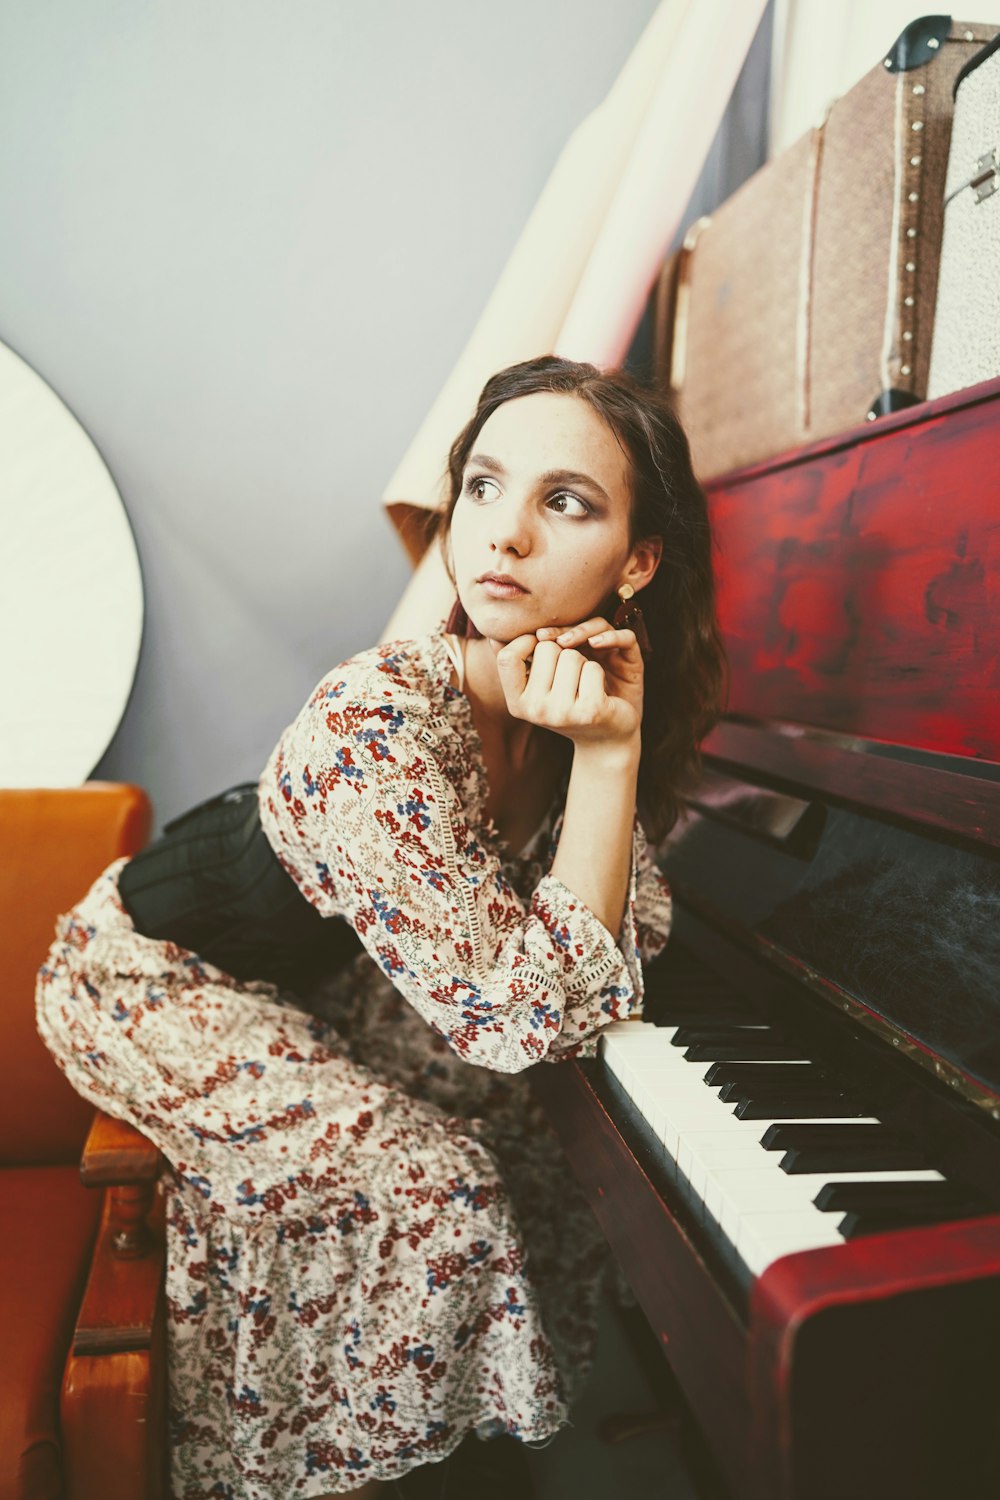 donna che si appoggia al pianoforte rosso e grigio